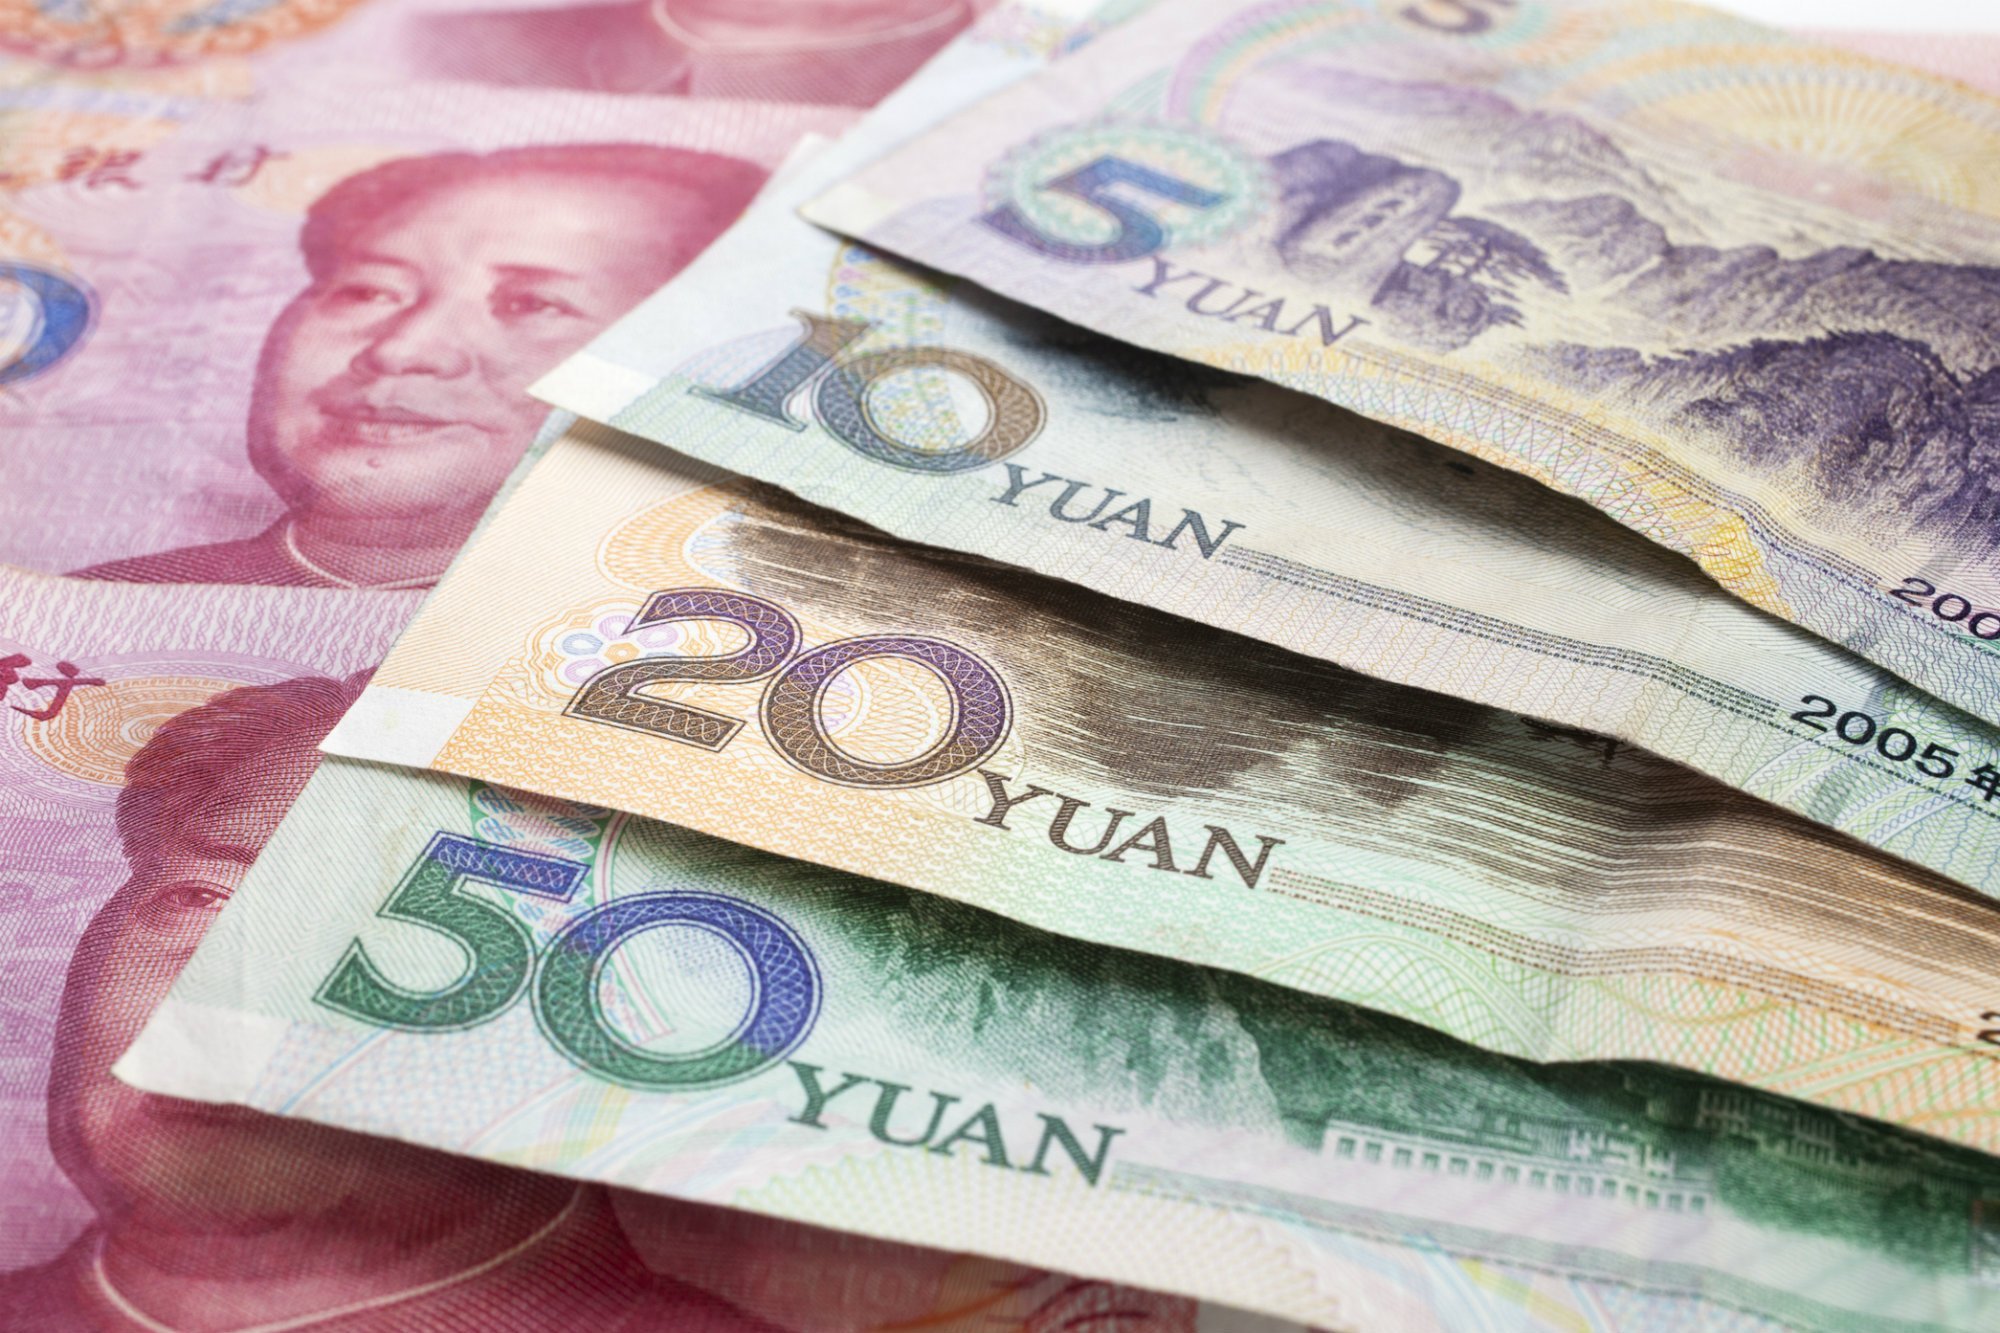 Giữa 1 yên Trung Quốc và 1 tệ Trung Quốc có sự khác biệt về tỷ giá khi quy đổi sang tiền Việt Nam không?
